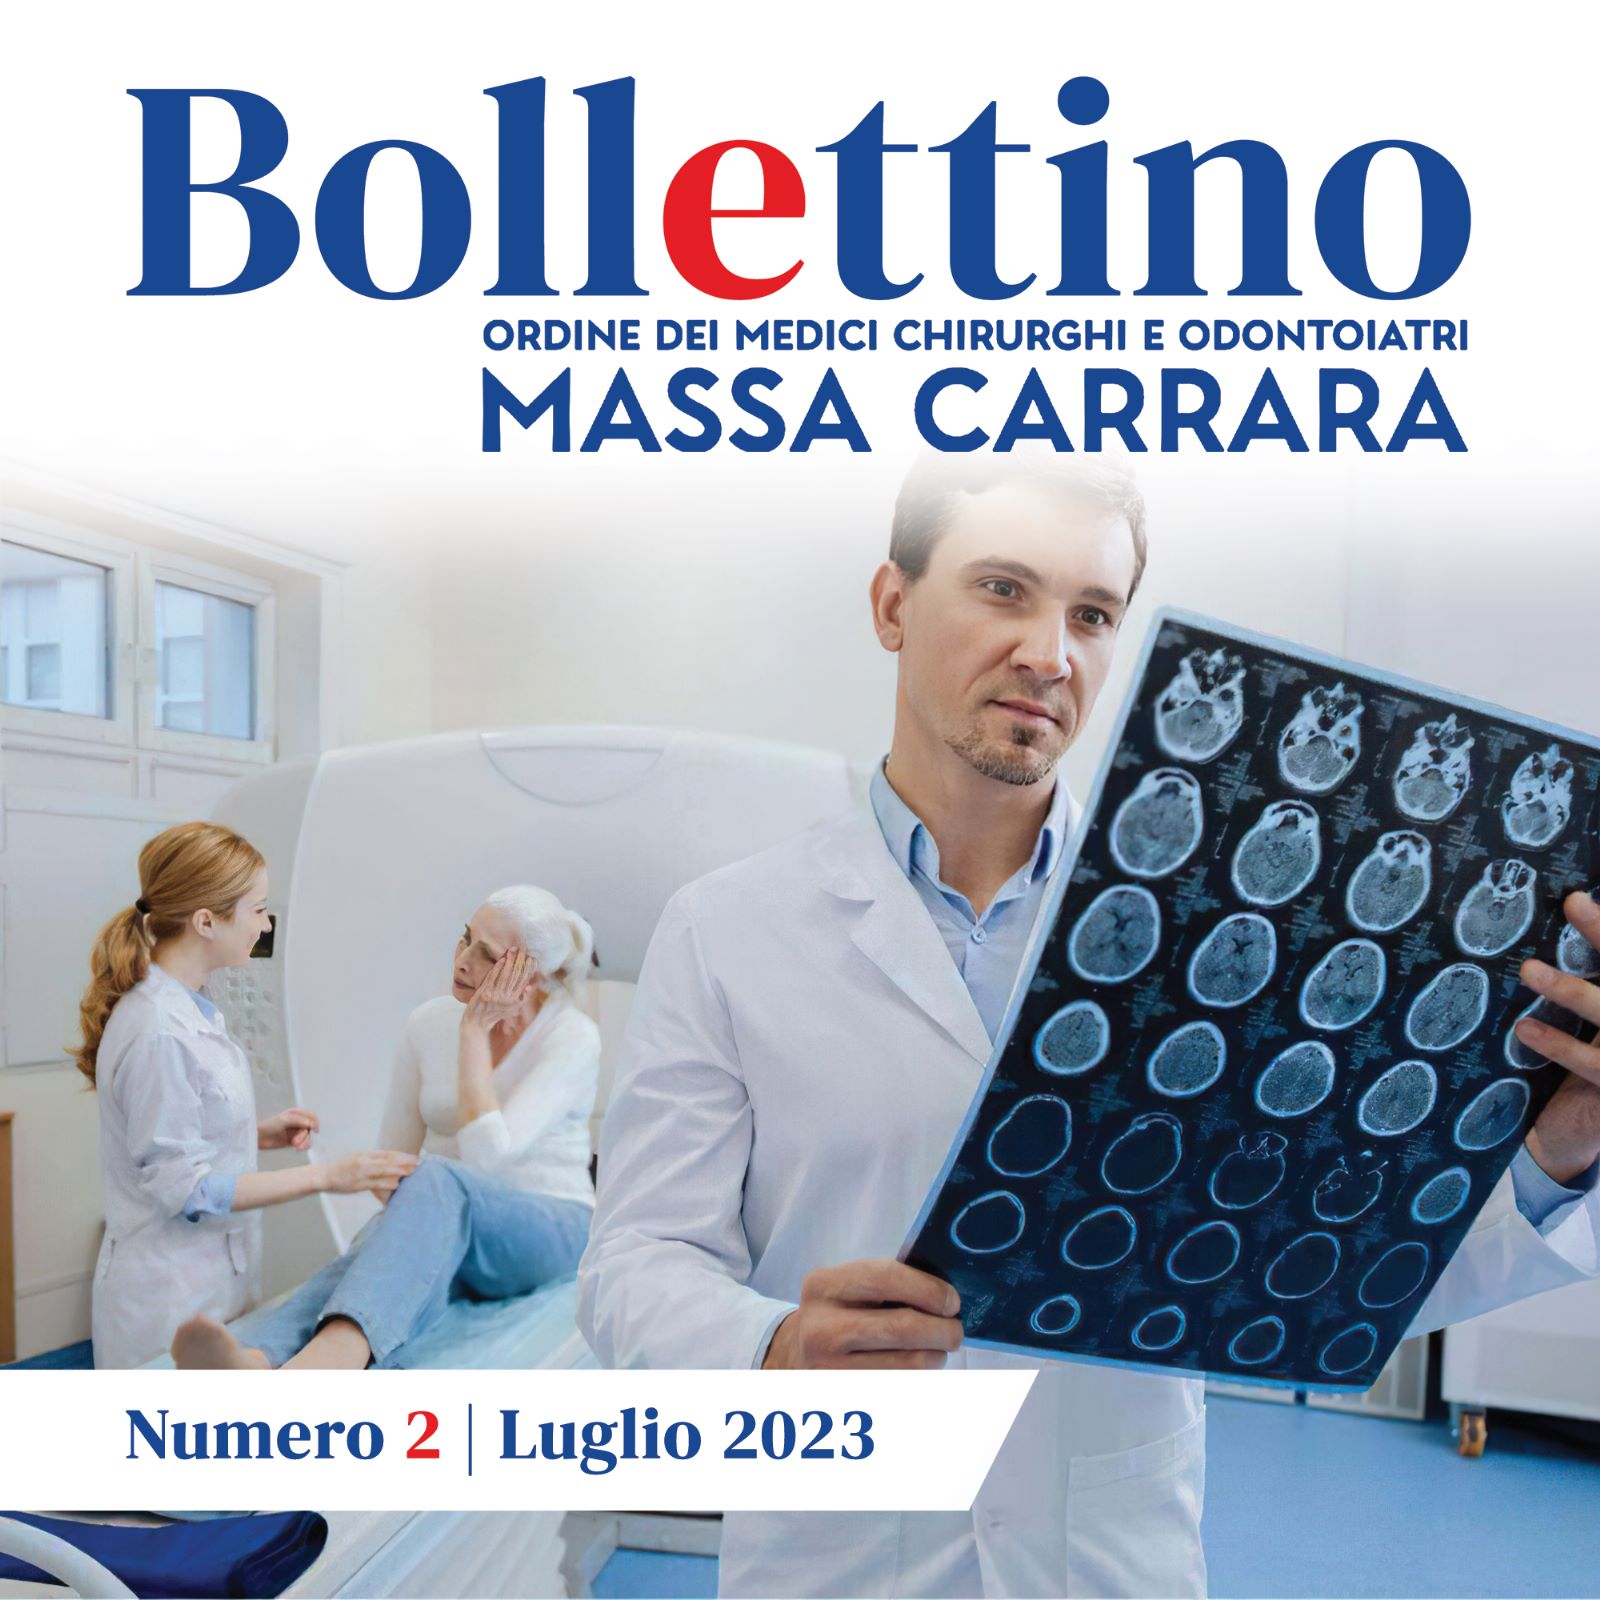 Clicca per accedere all'articolo Bollettino OMCeO - Luglio 2023